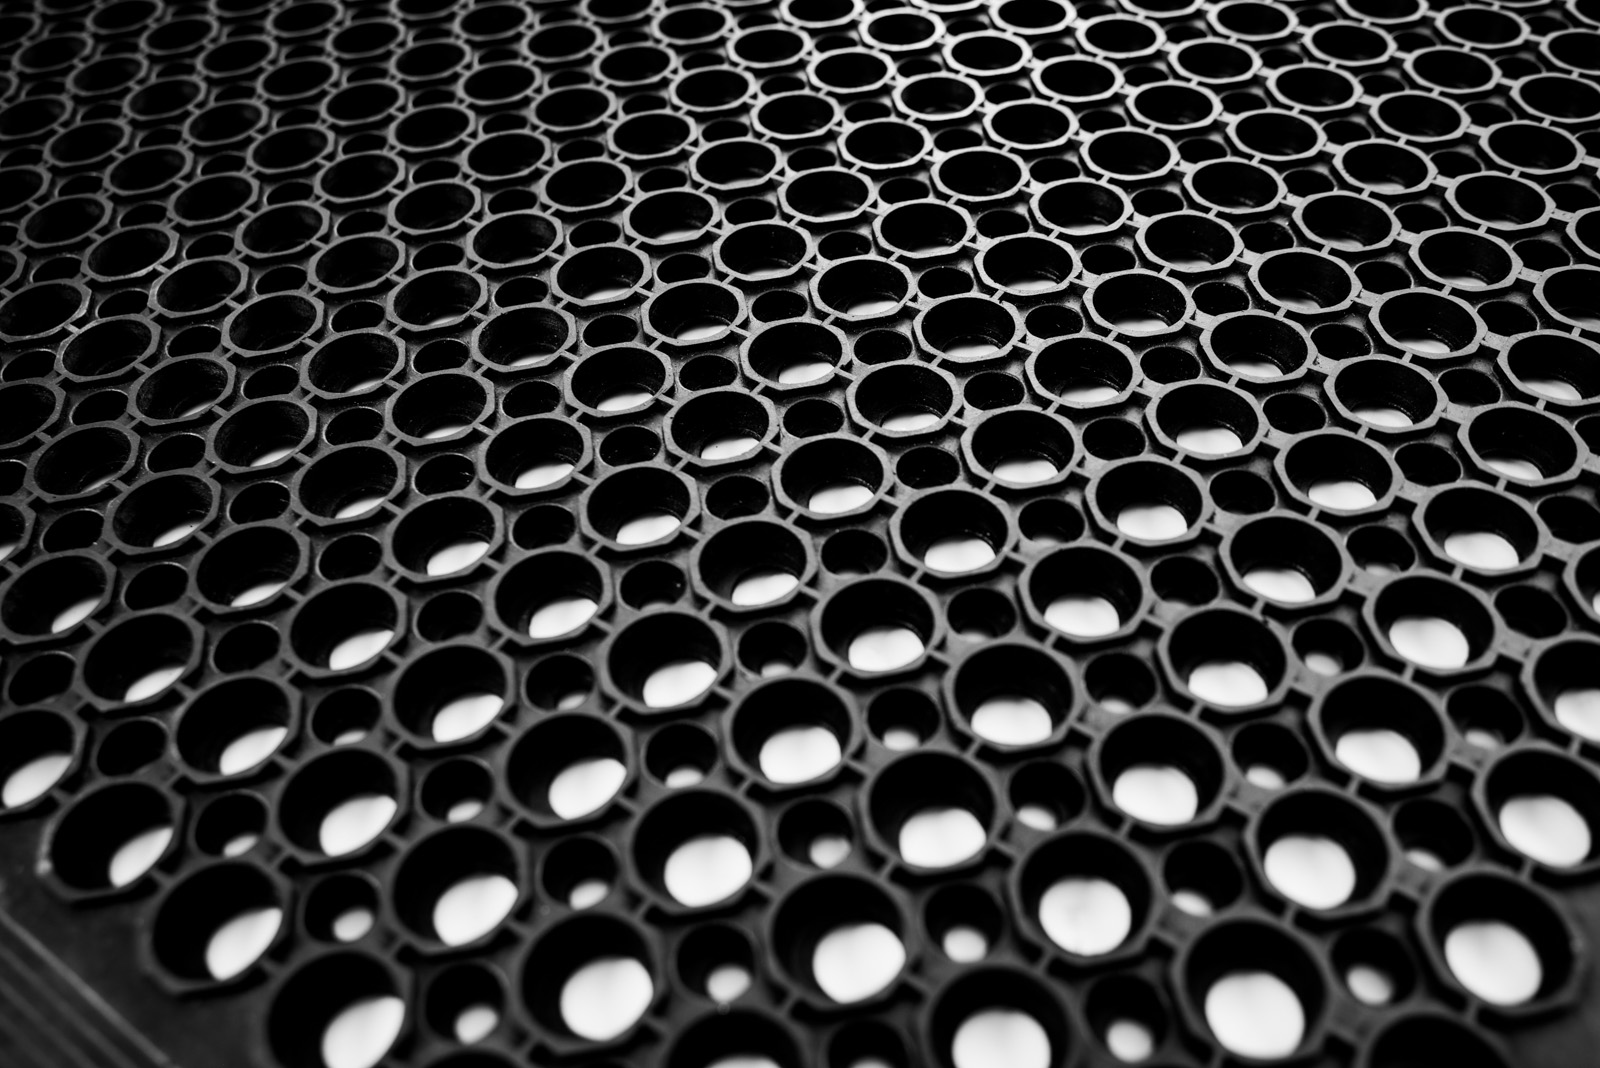 Fußmatte MONA 90x150x1,2 cm schwarz Eingang Matte außem Jet-Line Ringmuster